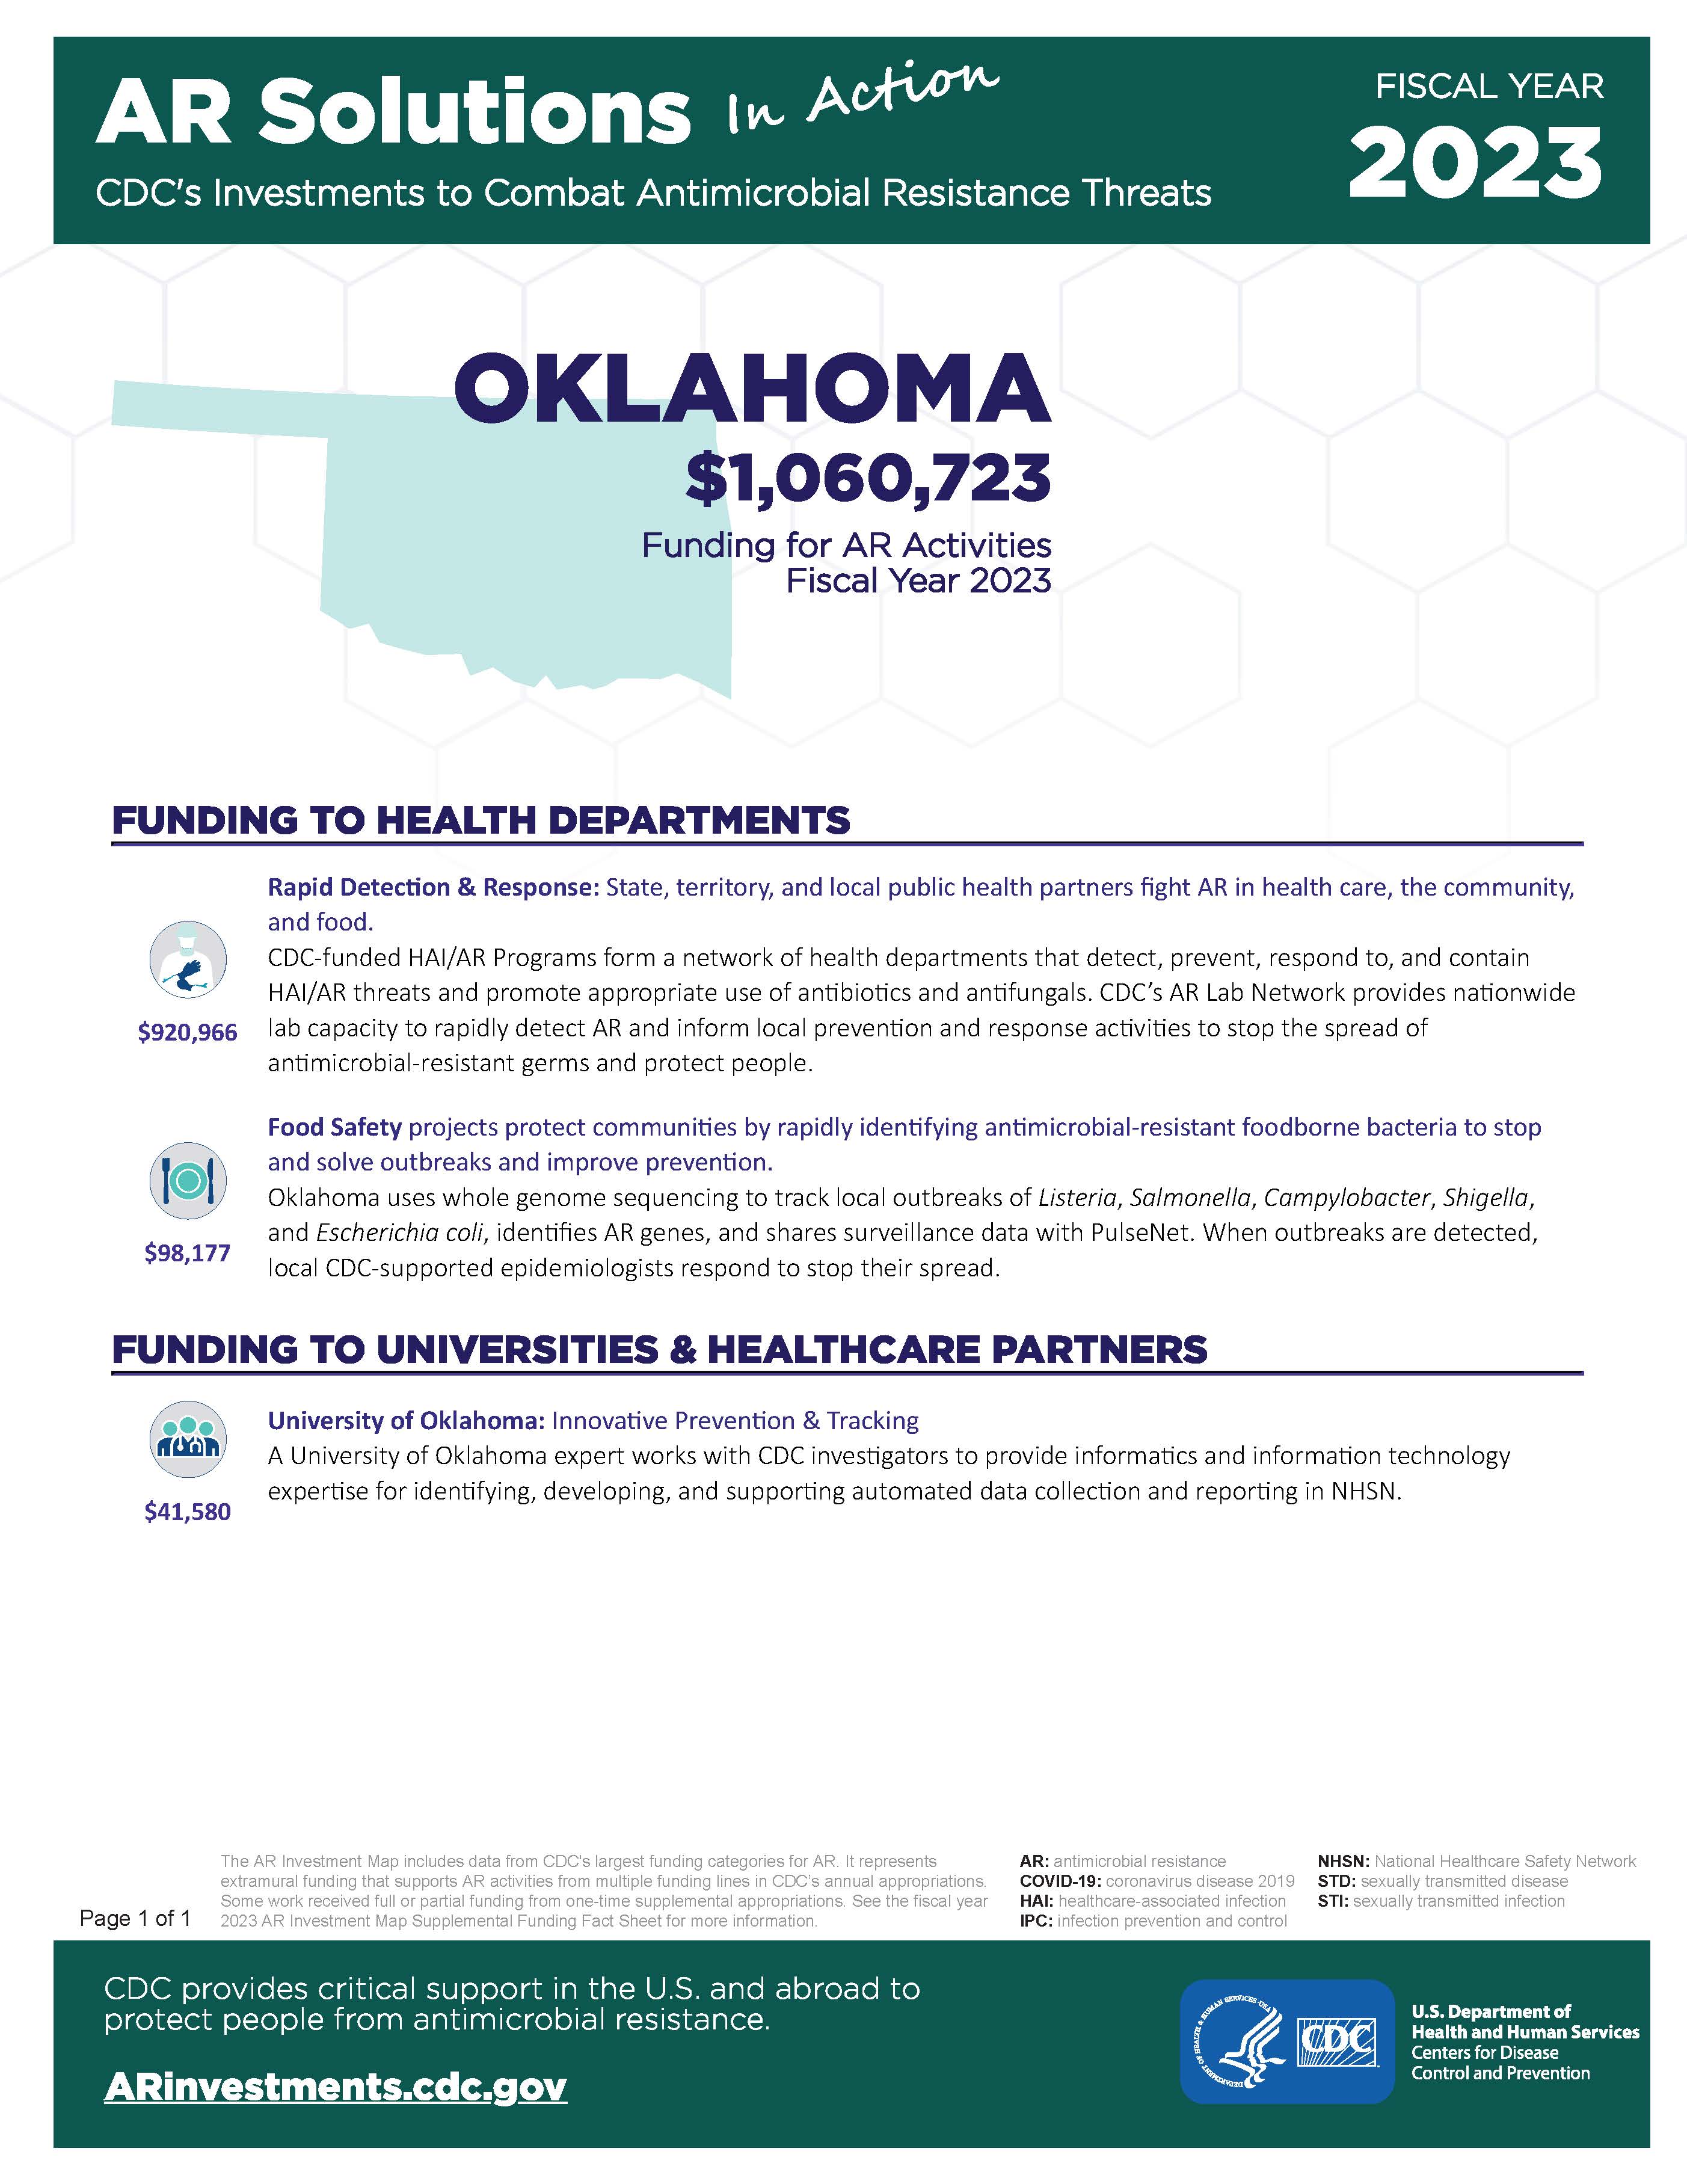 View Factsheet for Oklahoma